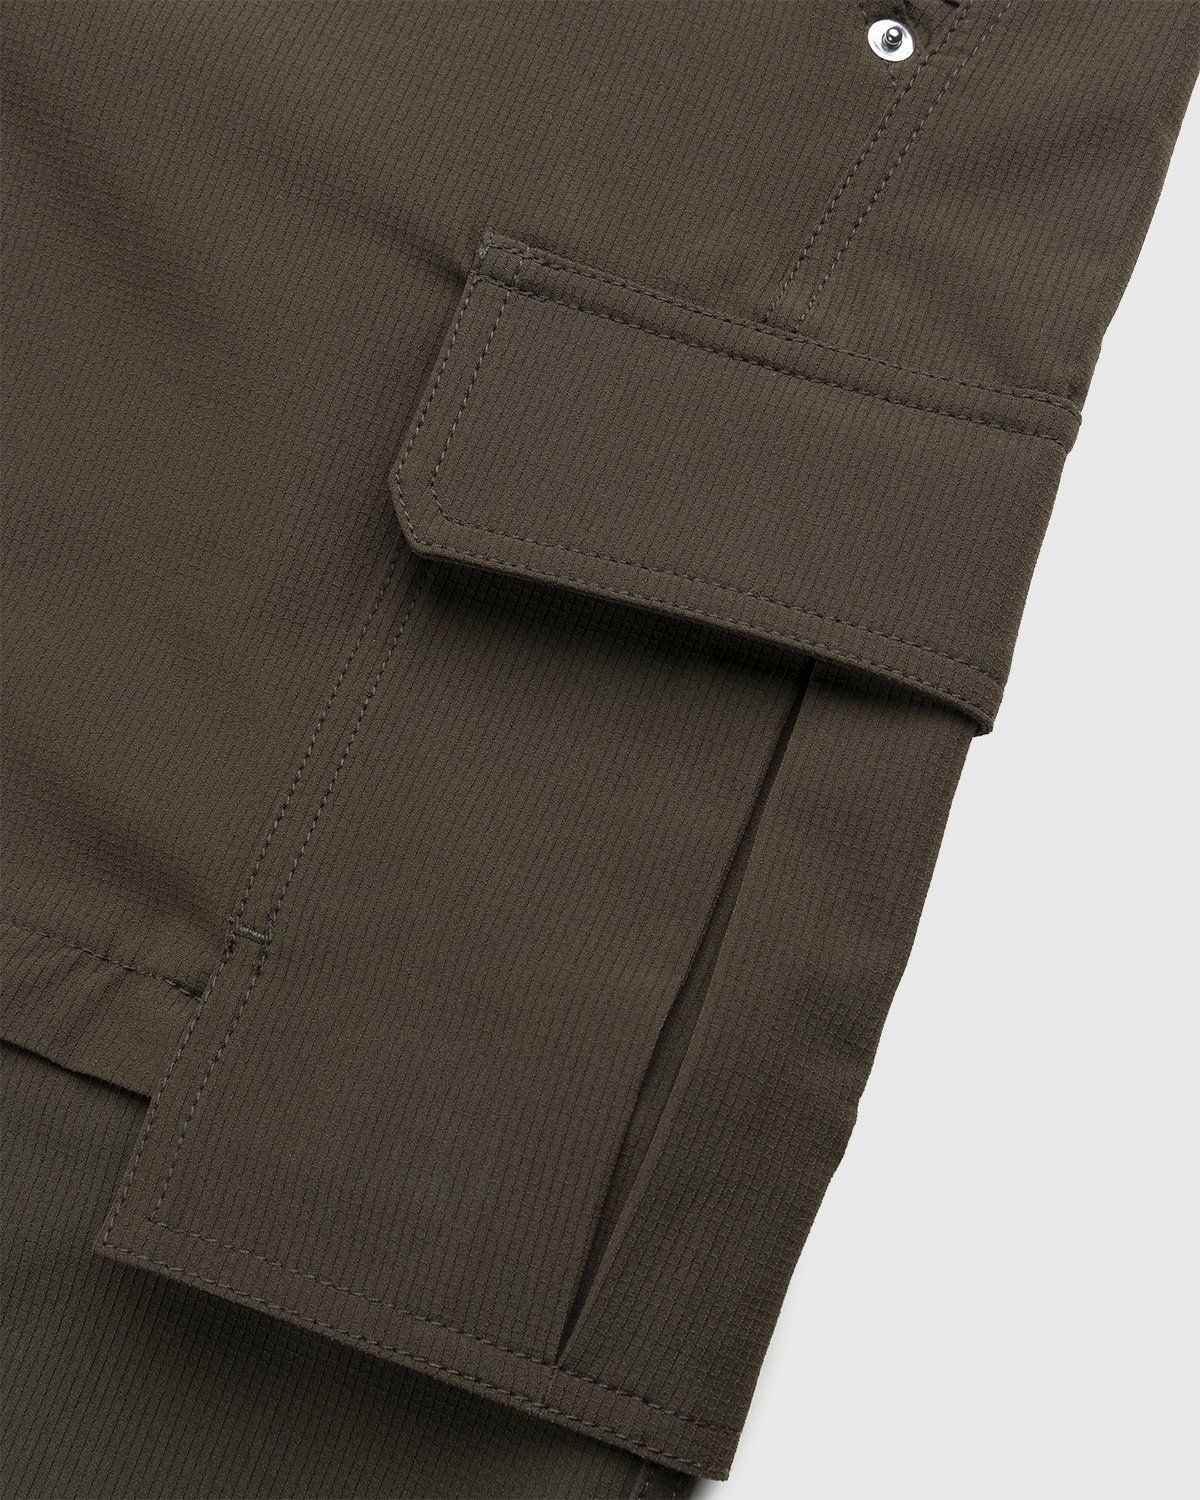 JACQUEMUS – Le Pantalon Peche Dark Khaki - Trousers - Green - Image 4